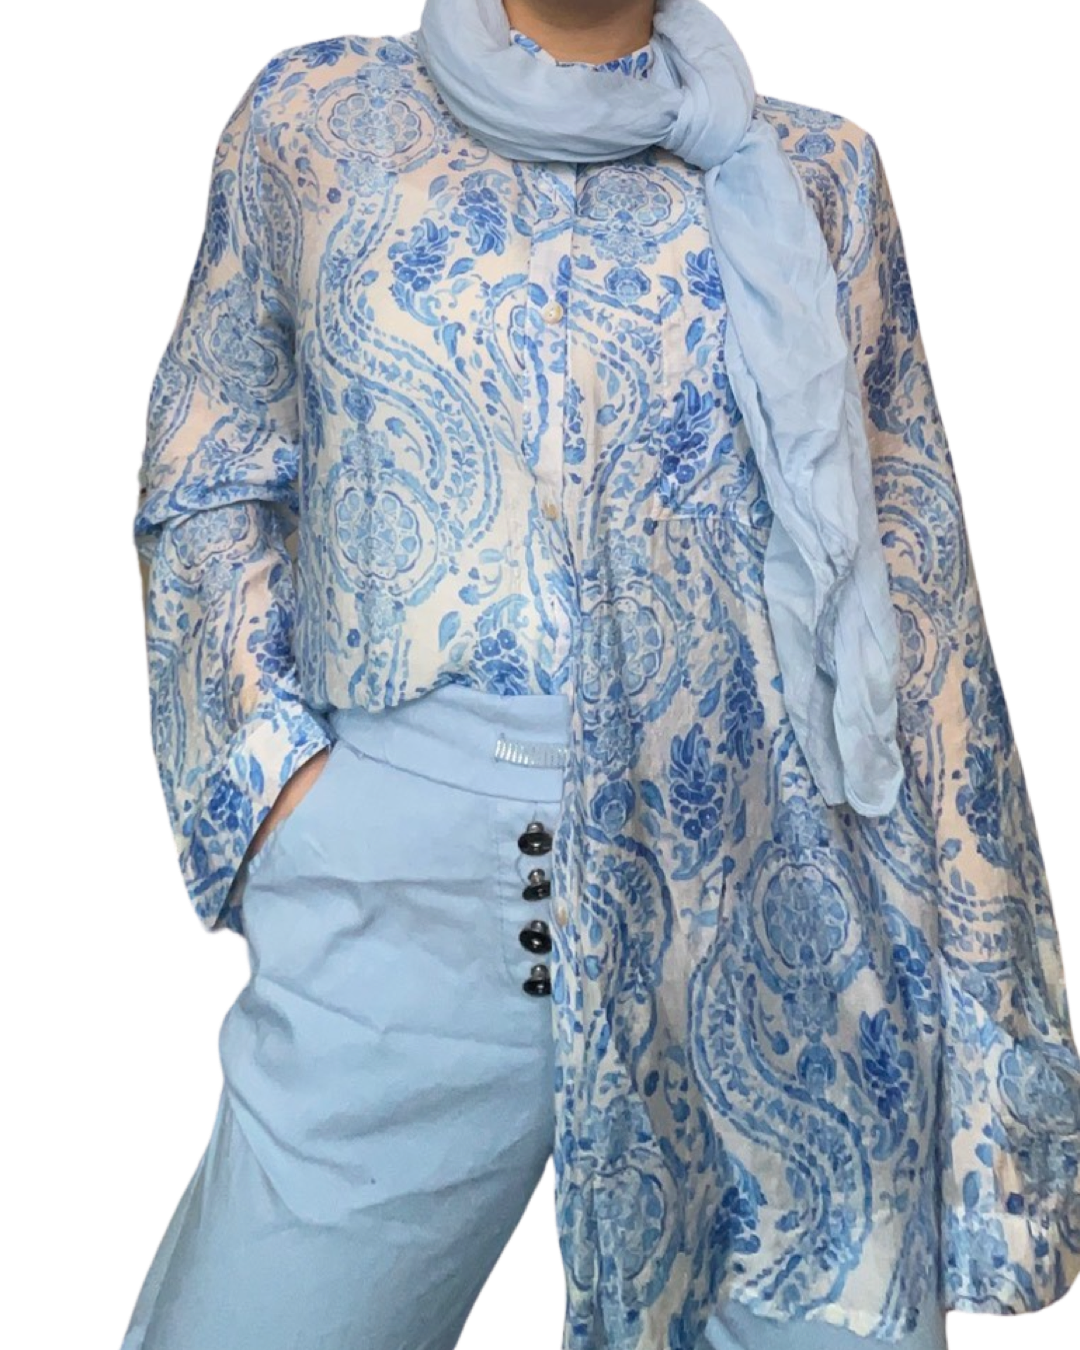 Chemise blanche pour femme imprimé de motifs floraux avec foulard et pantalons bleu ciel.